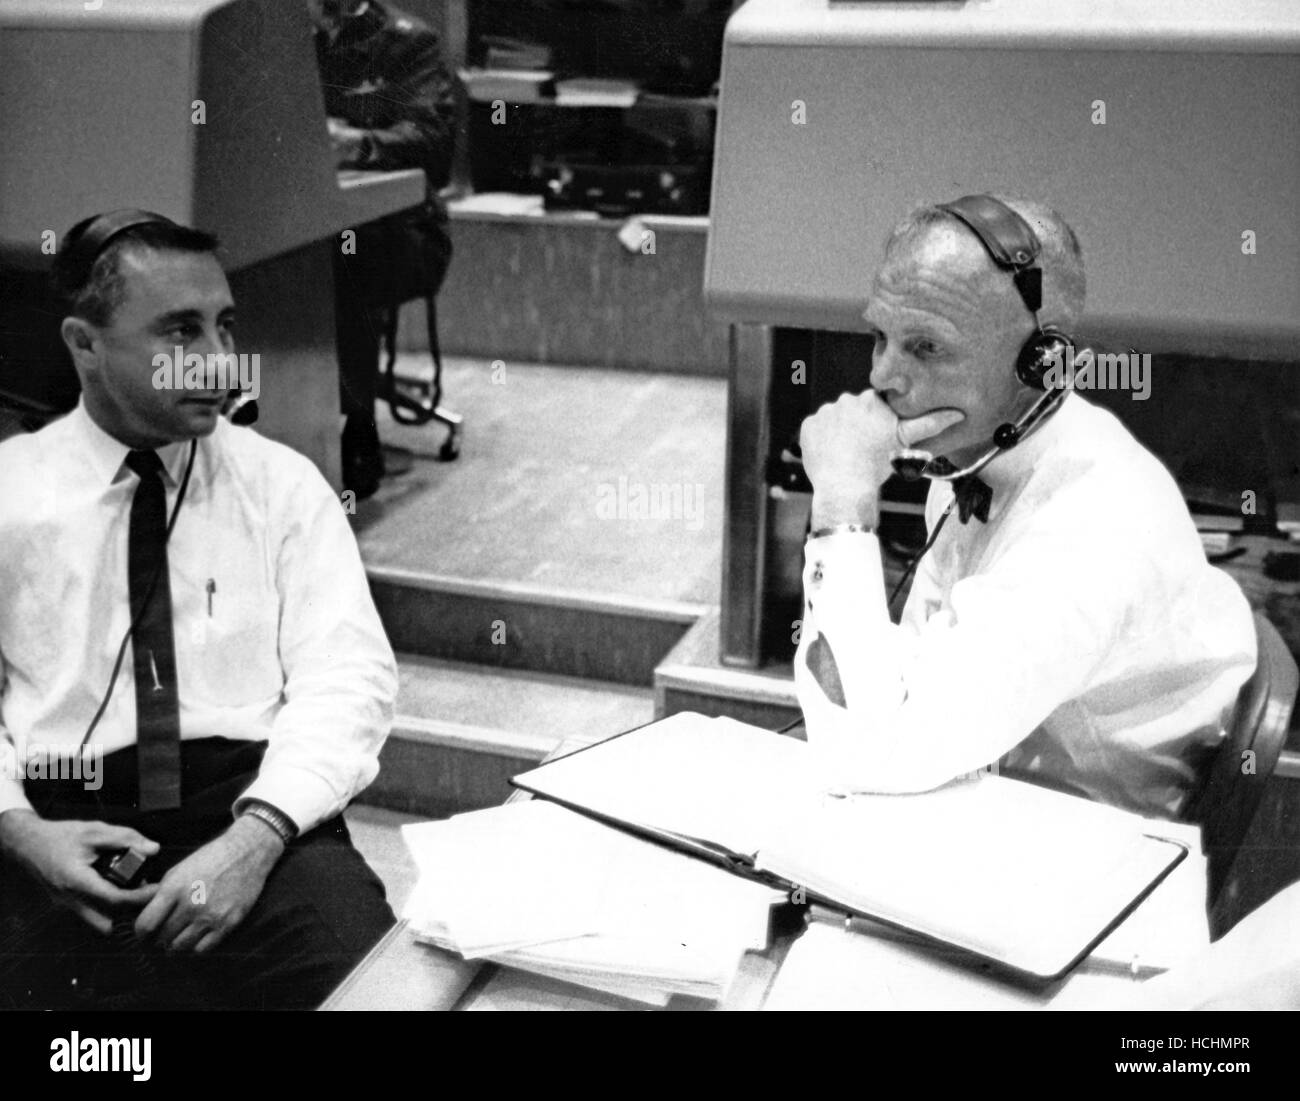 Veteran USA Spacemen erwarten Wort vom Projekt Mercury Astronaut M. Scott Carpenter kehrt er zurück zur Erde 3 Ausflüge rund um den Globus in Cape Canaveral, Florida, 24. Mai 1962. Links; I. Virgil "Gus" Grissom, Pilot des Merkurs zweite suborbitalen Mission und Recht; John H. Glenn, Jr., erster US-orbital Astronaut. Grisson diente als Capsule Communicator, assistiert von Glenn, während des Fluges des Tischlers. Credit: NASA über CNP /MediaPunch Stockfoto